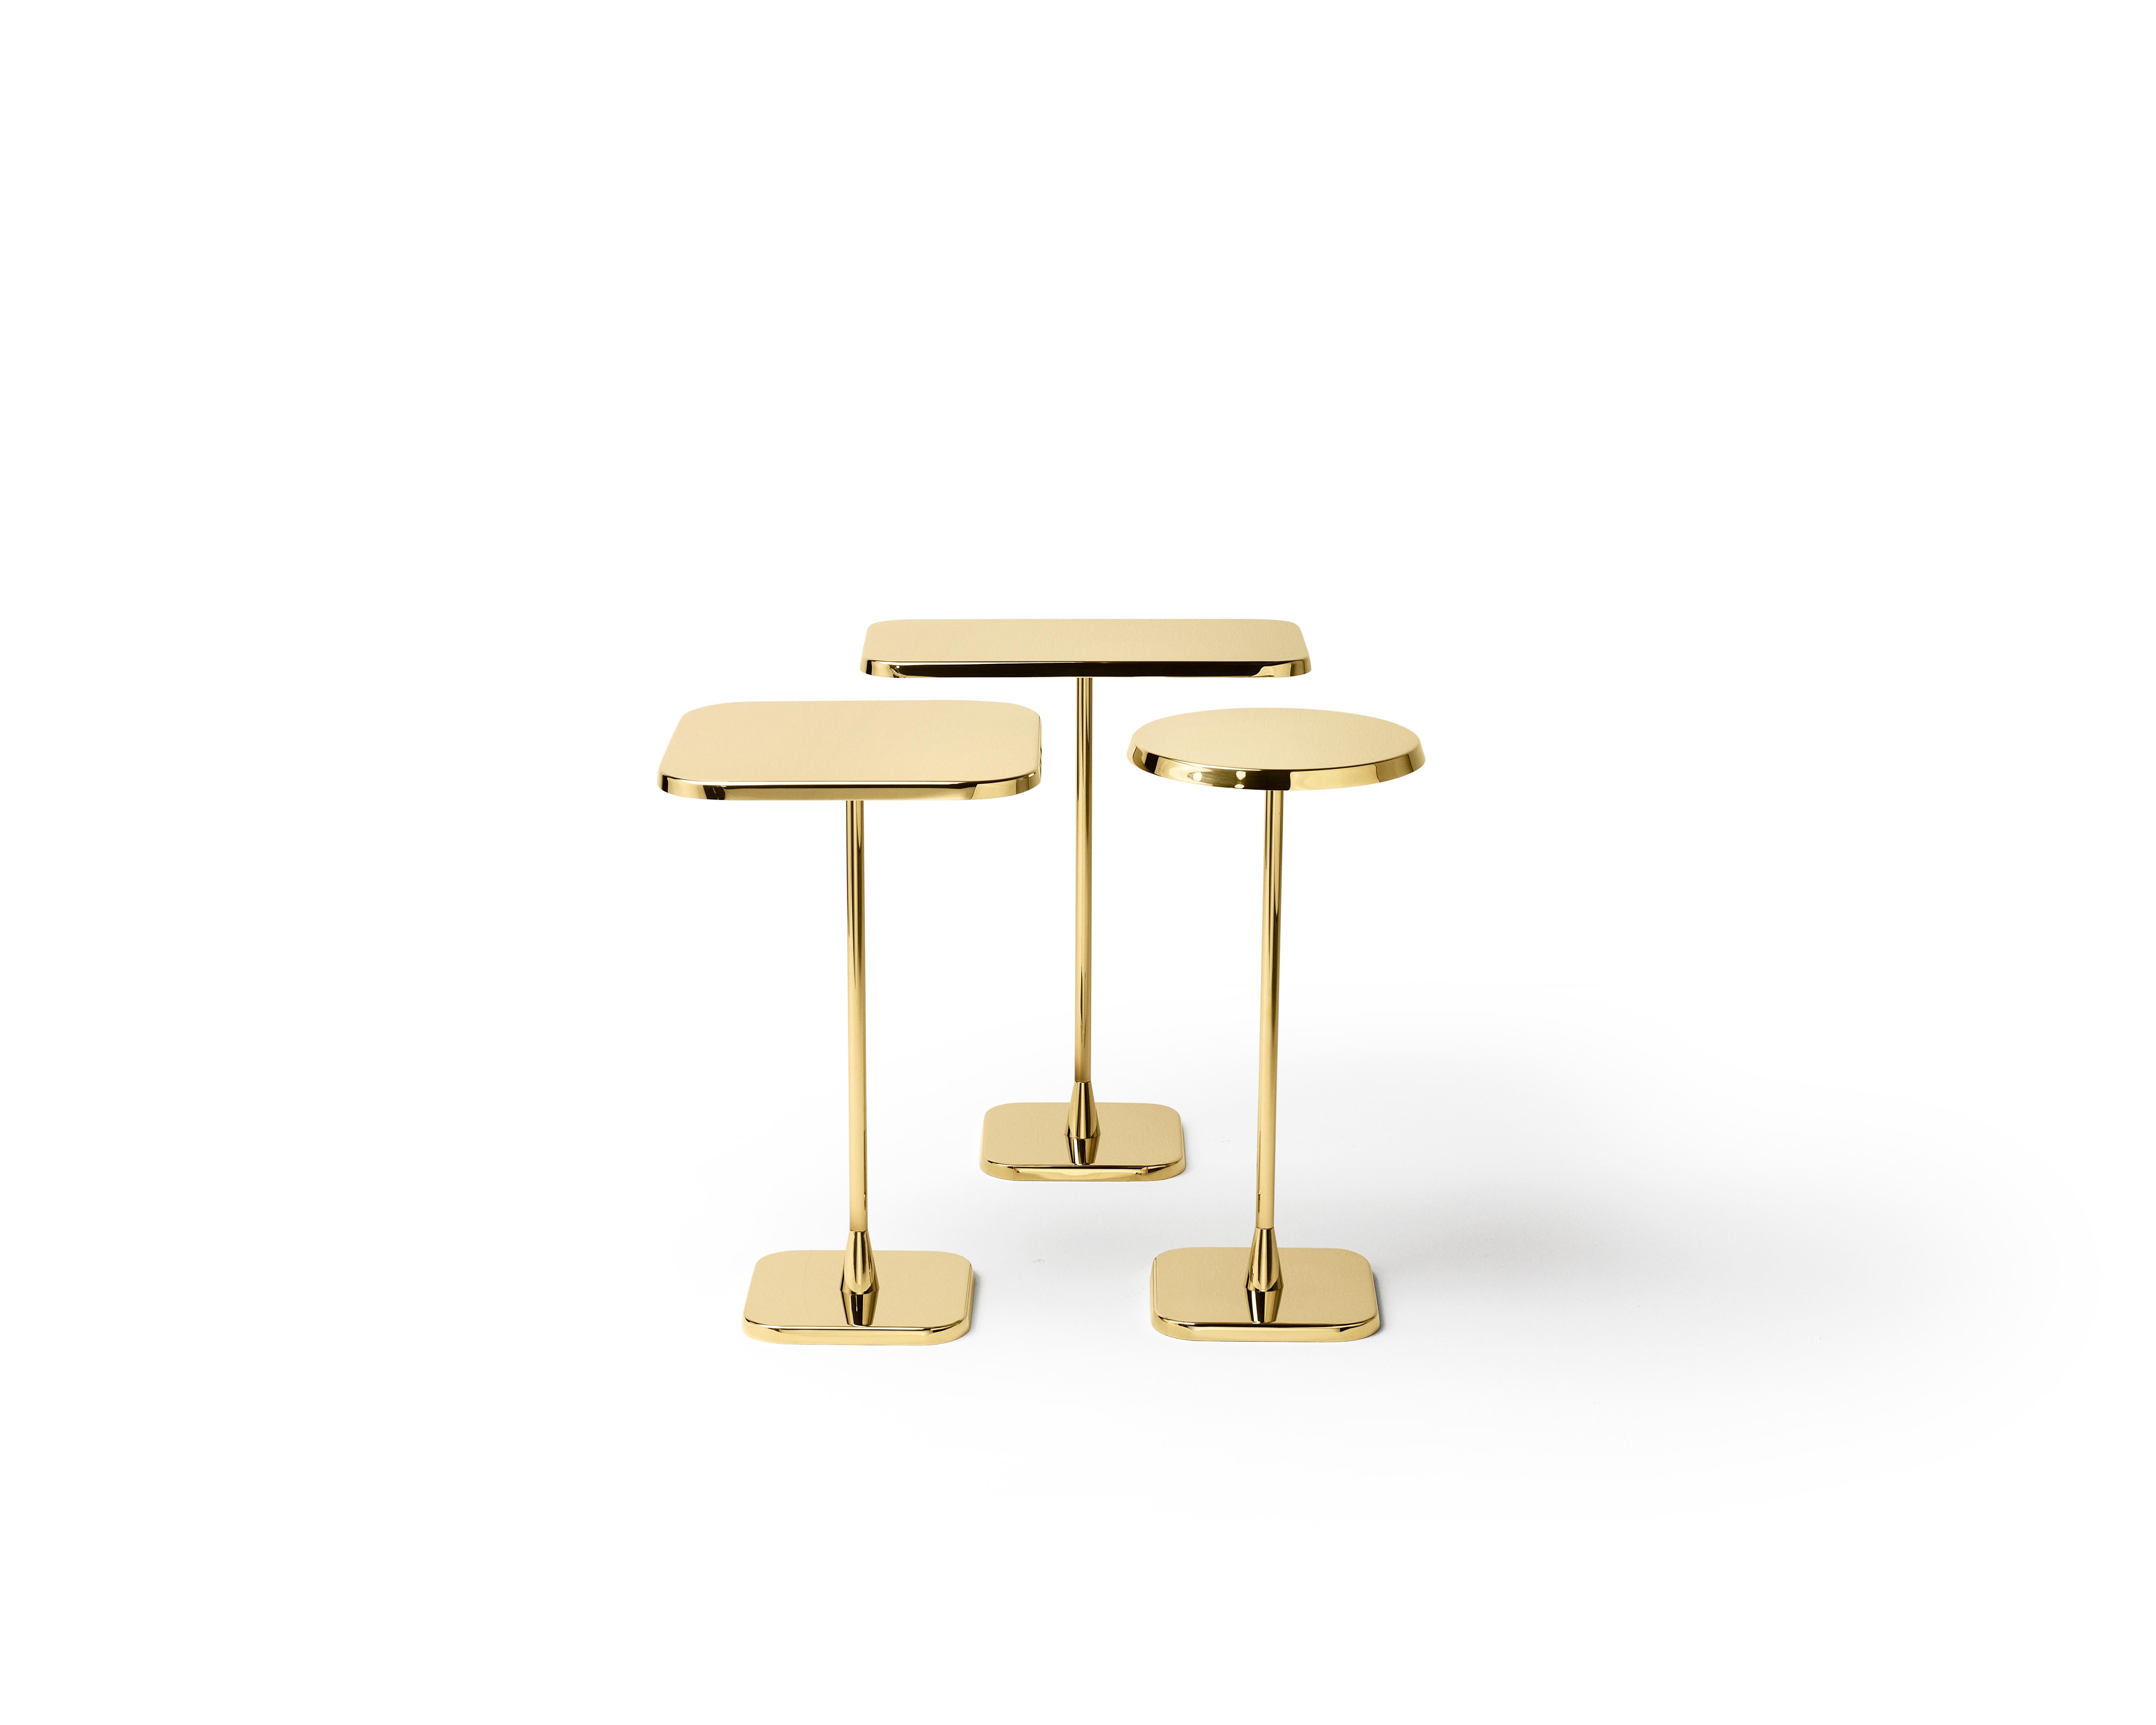 Quadratischer Tisch aus rostfreiem Stahl
Für die Inneneinrichtung der niederländischen Nationaloper und des Balletts entwarf Hutten diese einfachen, aber eleganten und sehr nützlichen Beistelltische.

Material:
Rostfreier Stahl mit